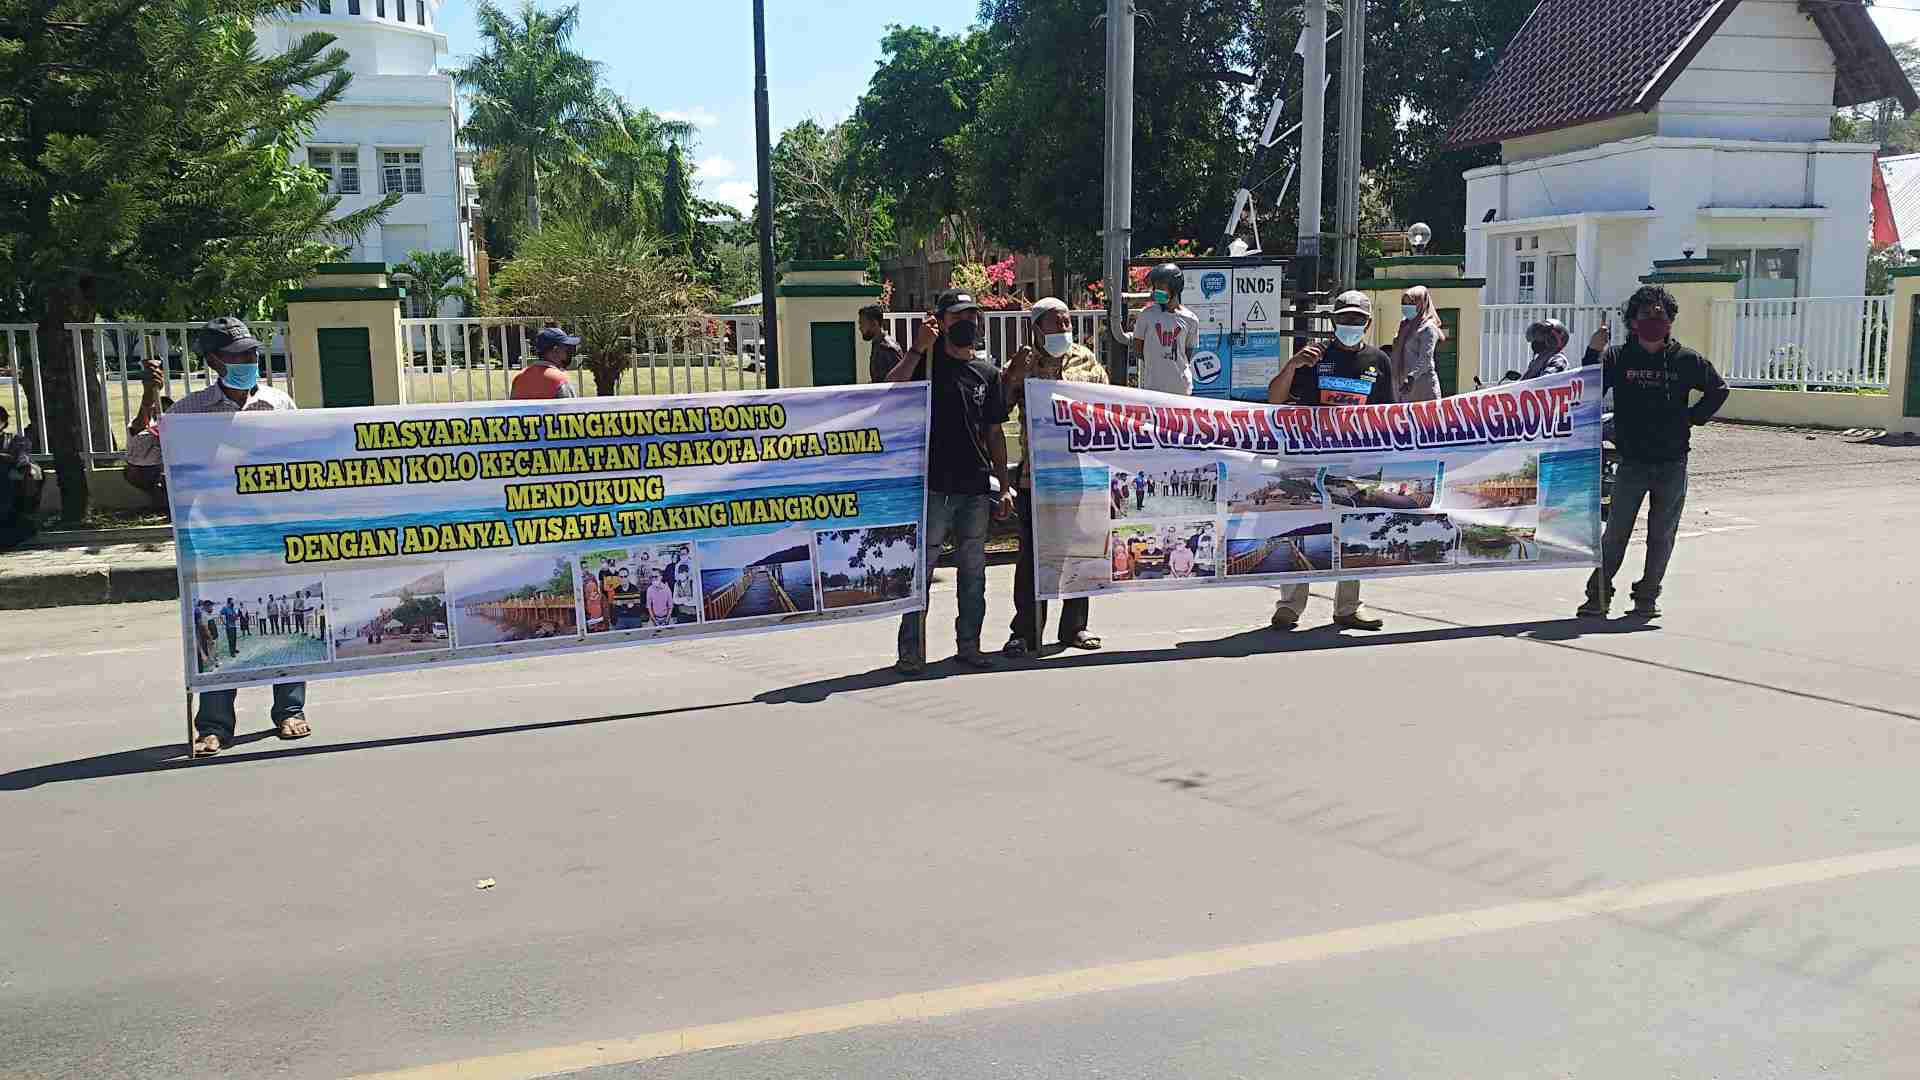 Kasus Tracking Mangrove, Demonstran Desak APH Bebaskan Feri Sofiyan dari Segala Tuntutan - Kabar Harian Bima